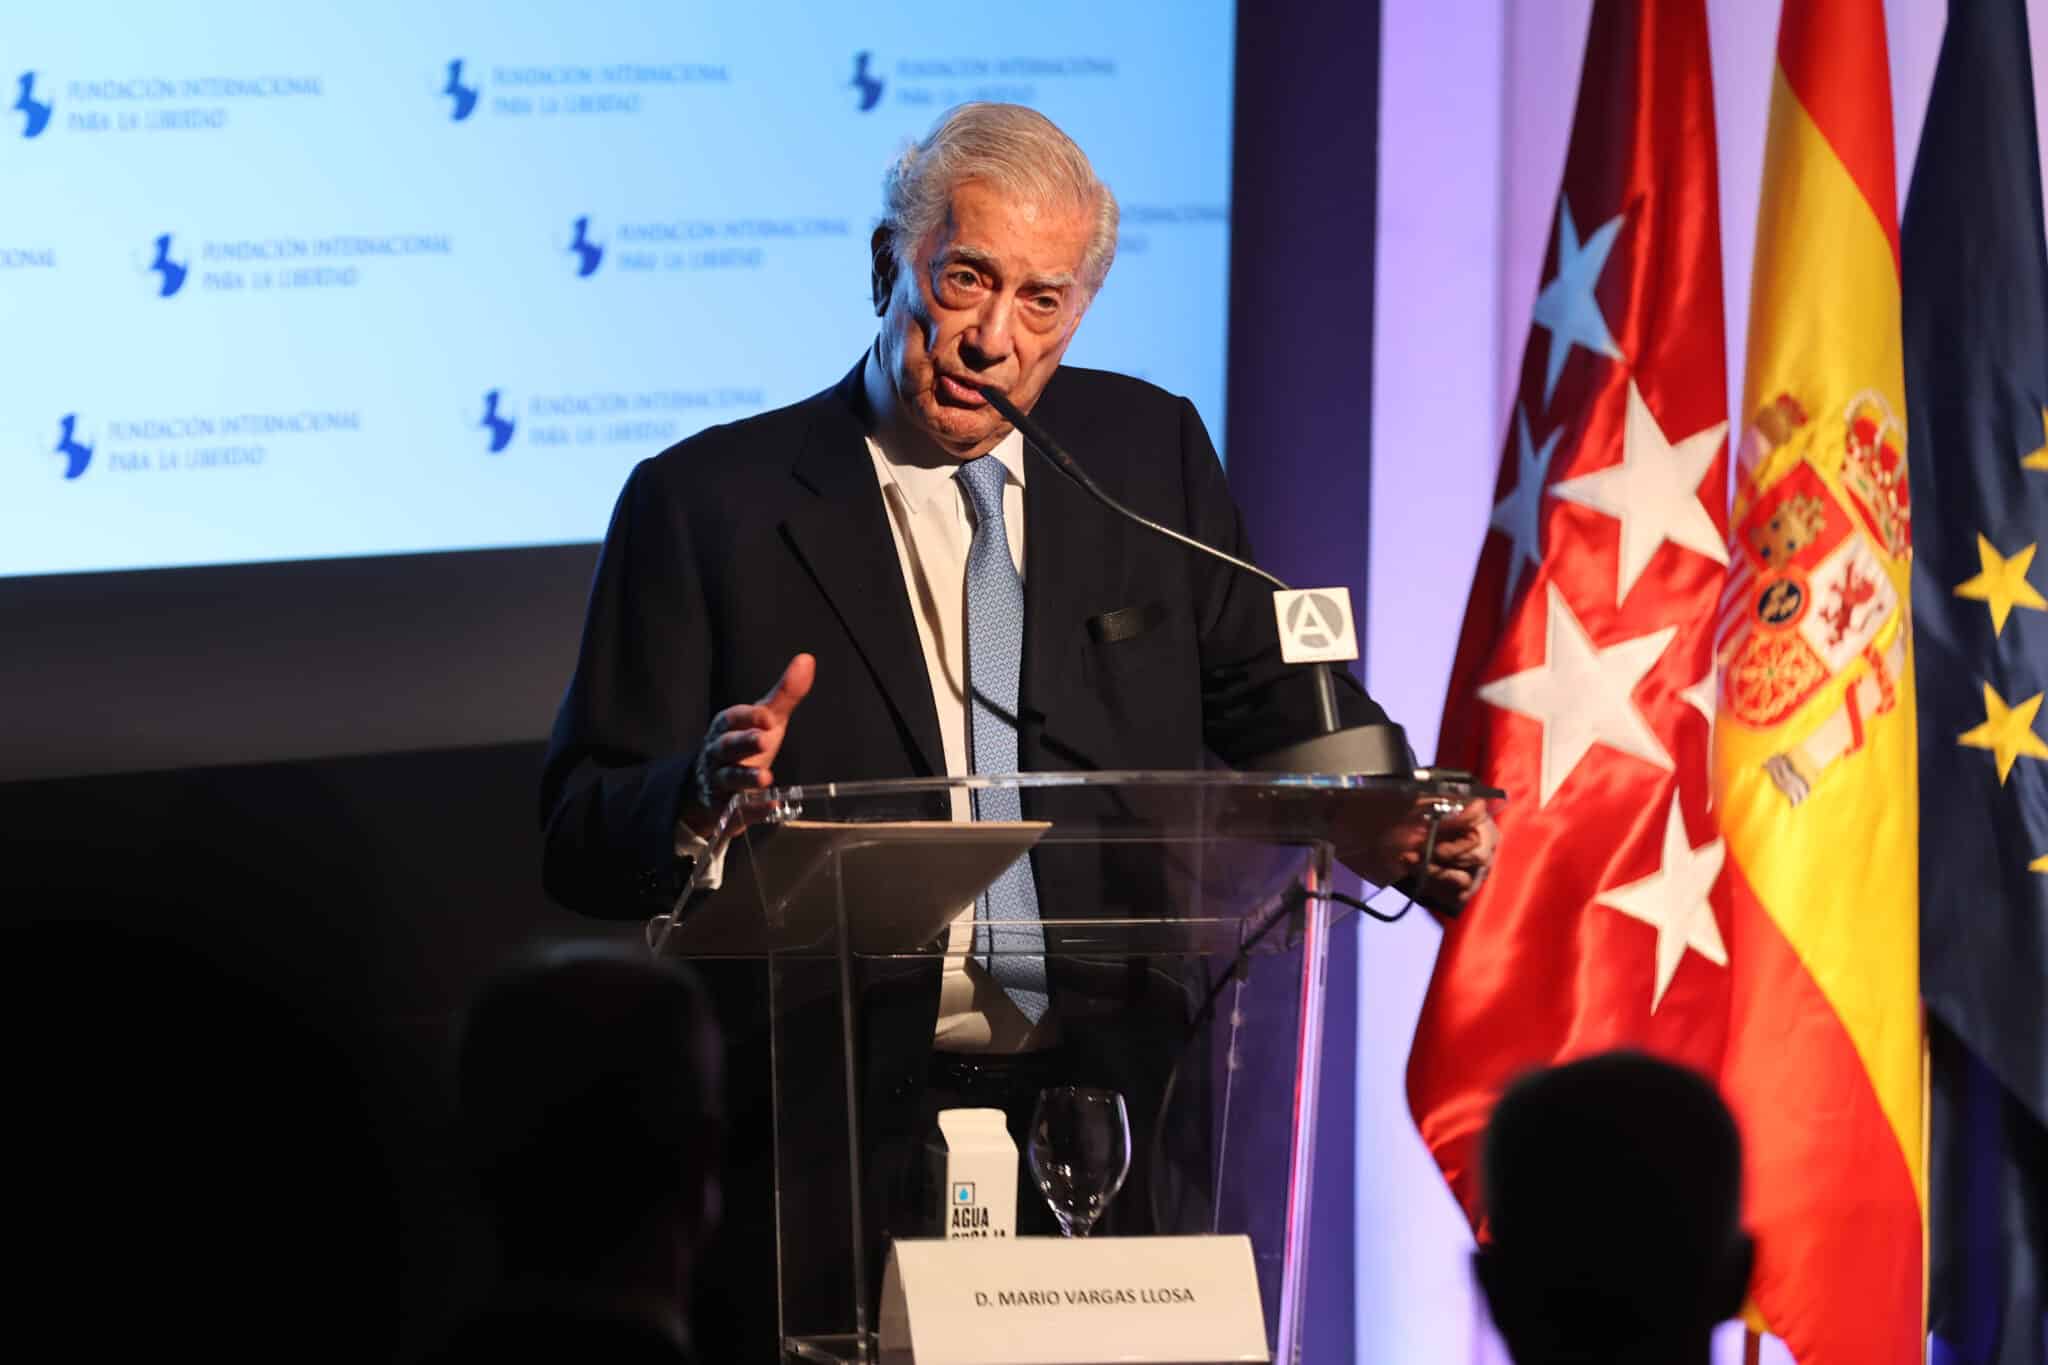 Mario Vargas Llosa durante el XV Foro Atlántico: “Iberoamérica: Libertad y Democracia”, a 20 de junio de 2022, en Madrid.